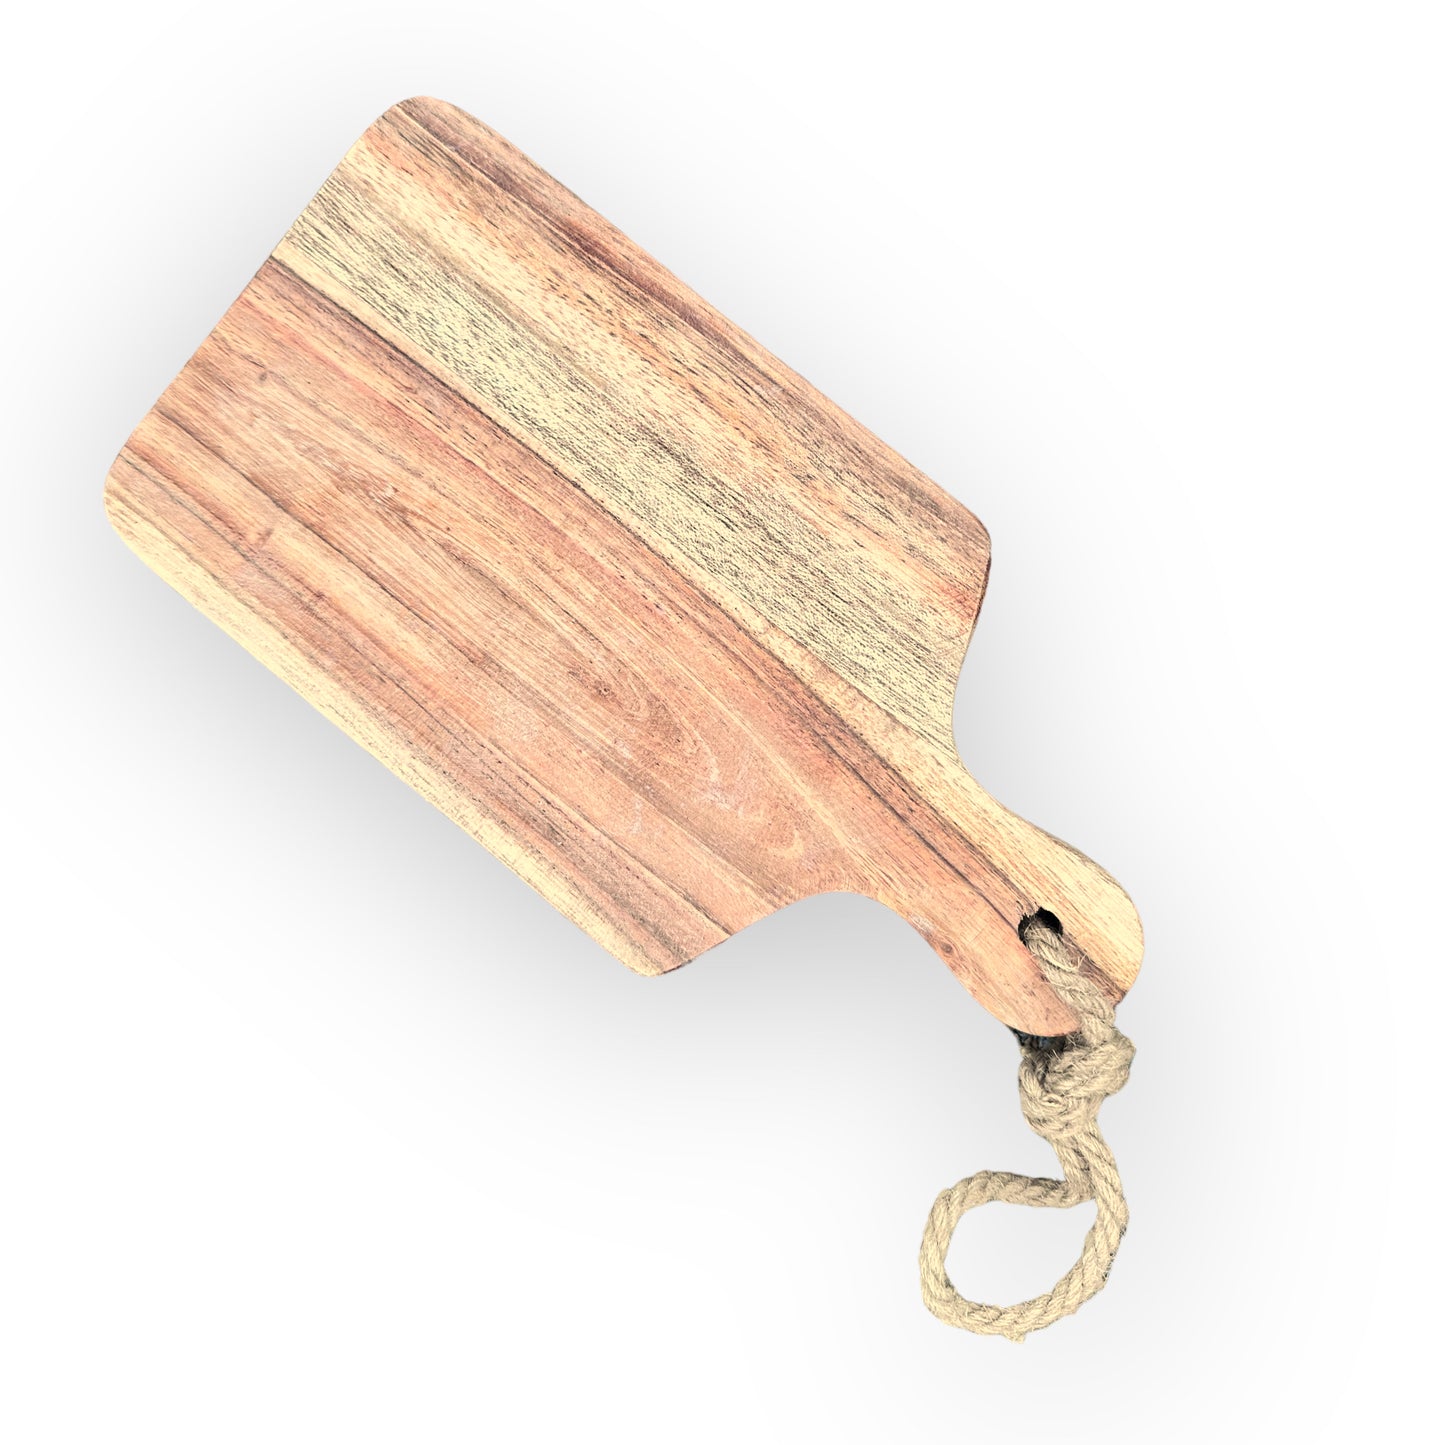 Custom Engraved Wood Boards - Create Lasting Memories